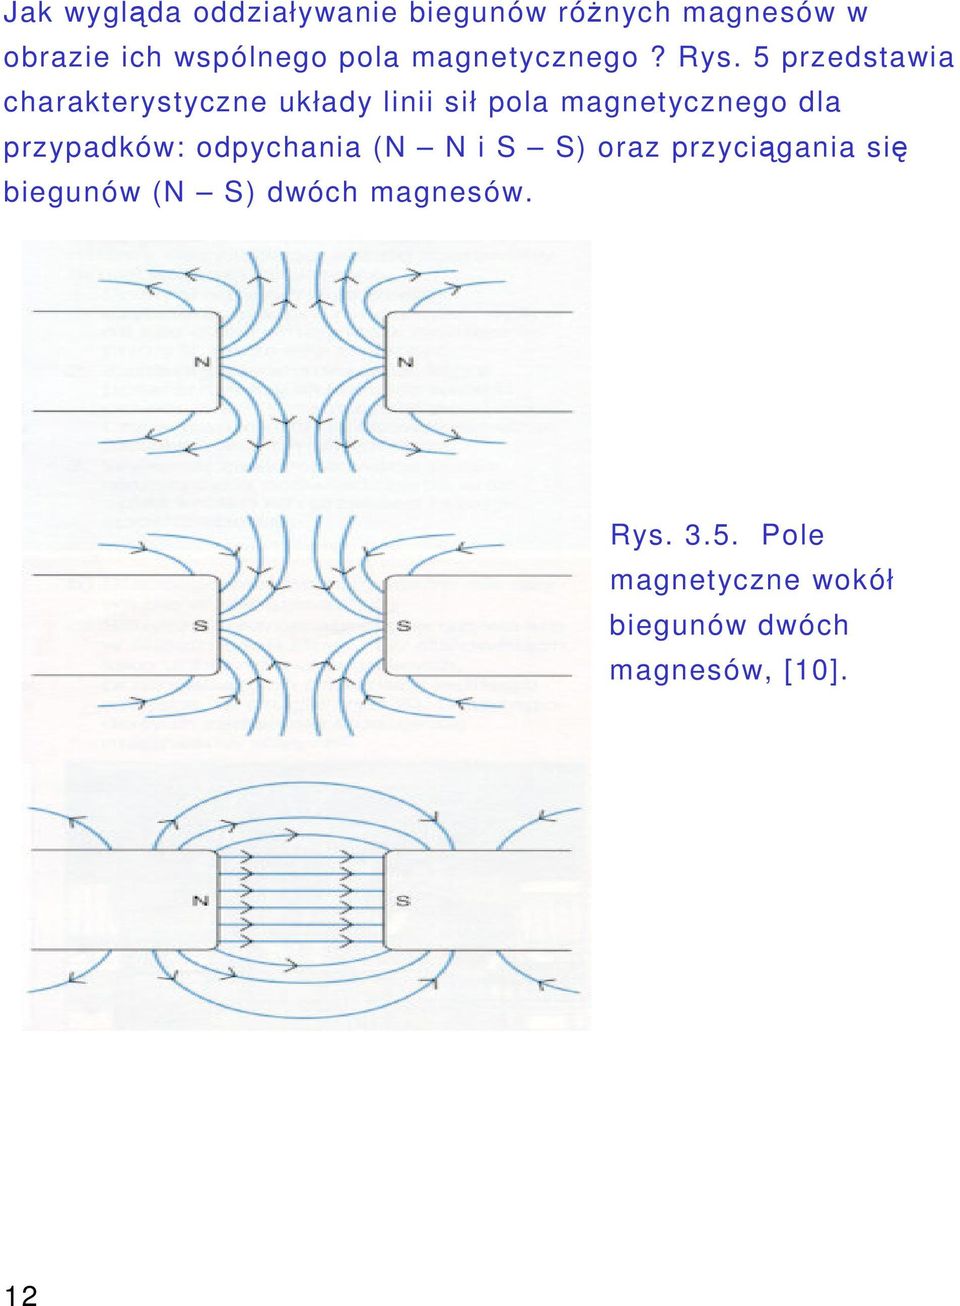 5 przedstawia charakterystyczne układy linii sił pola magnetycznego dla